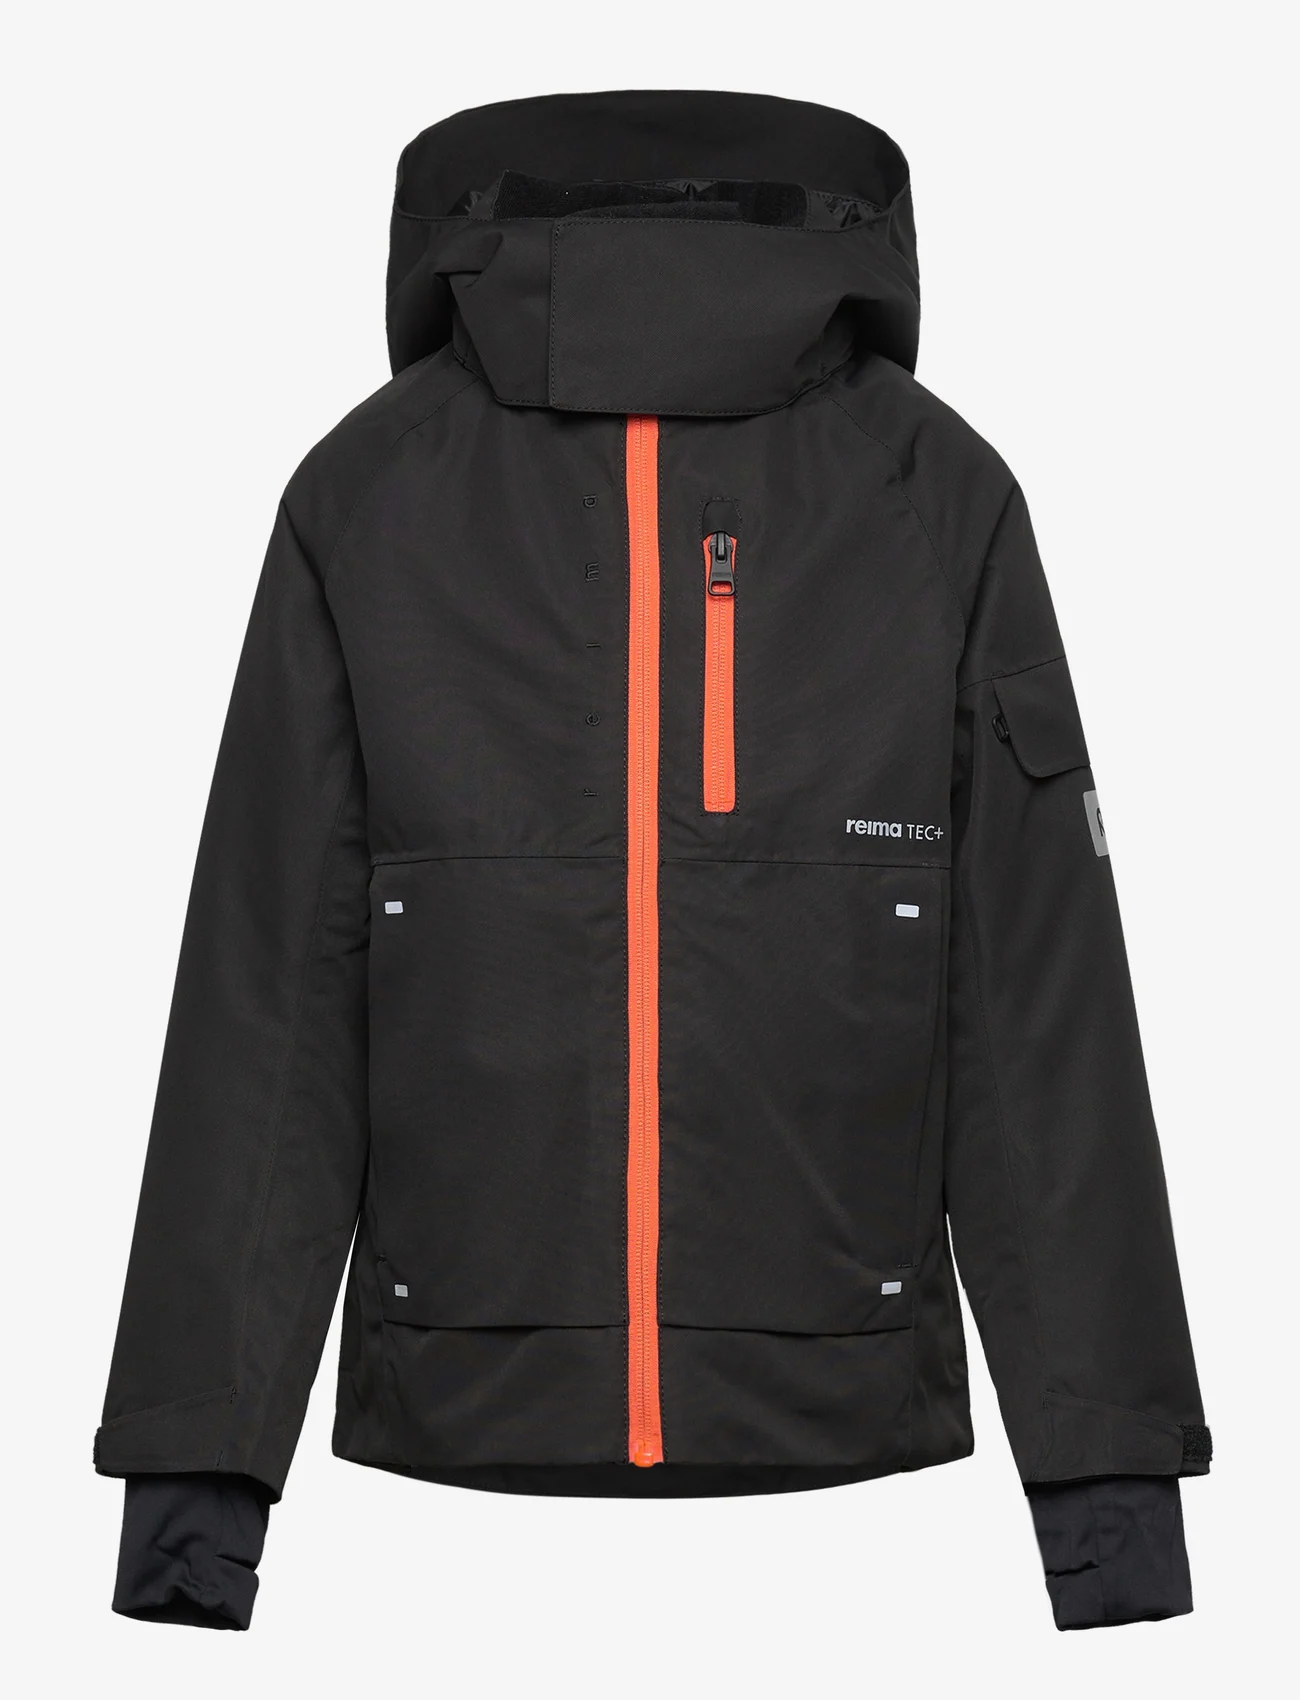 Reima - Reimatec winter jacket, Tieten - winterjassen - black - 0